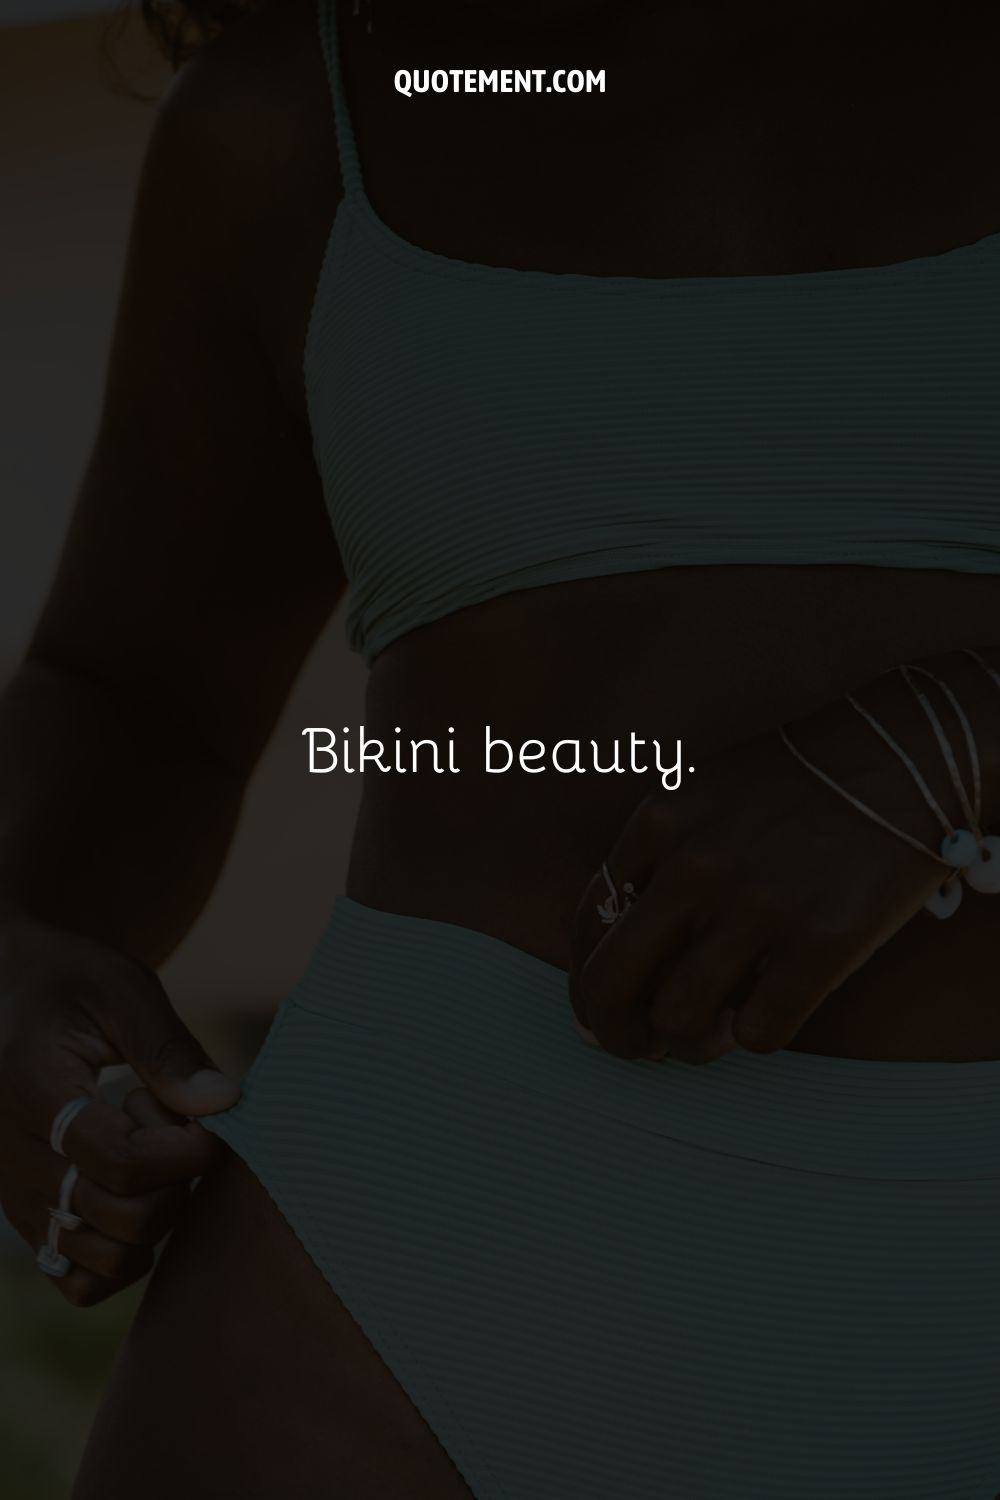 Photo of a white bikini representing a short bikini caption.
